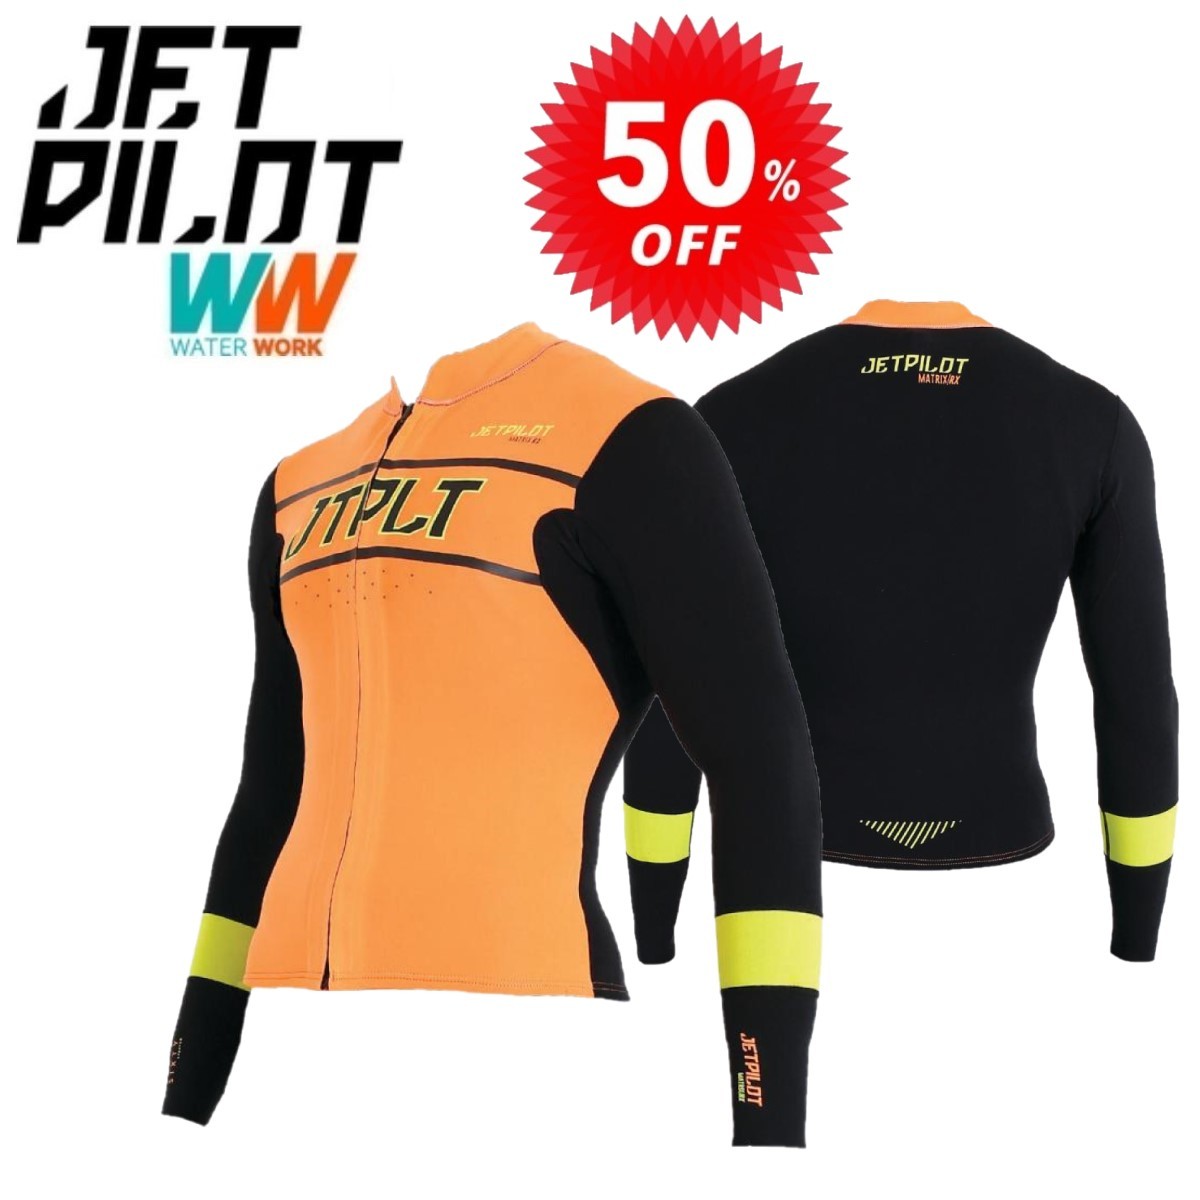 ジェットパイロット JETPILOT ウェットスーツ セール 50%オフ 送料無料 RX レース ジャケット JA20156 ブラック/オレンジ M タッパー